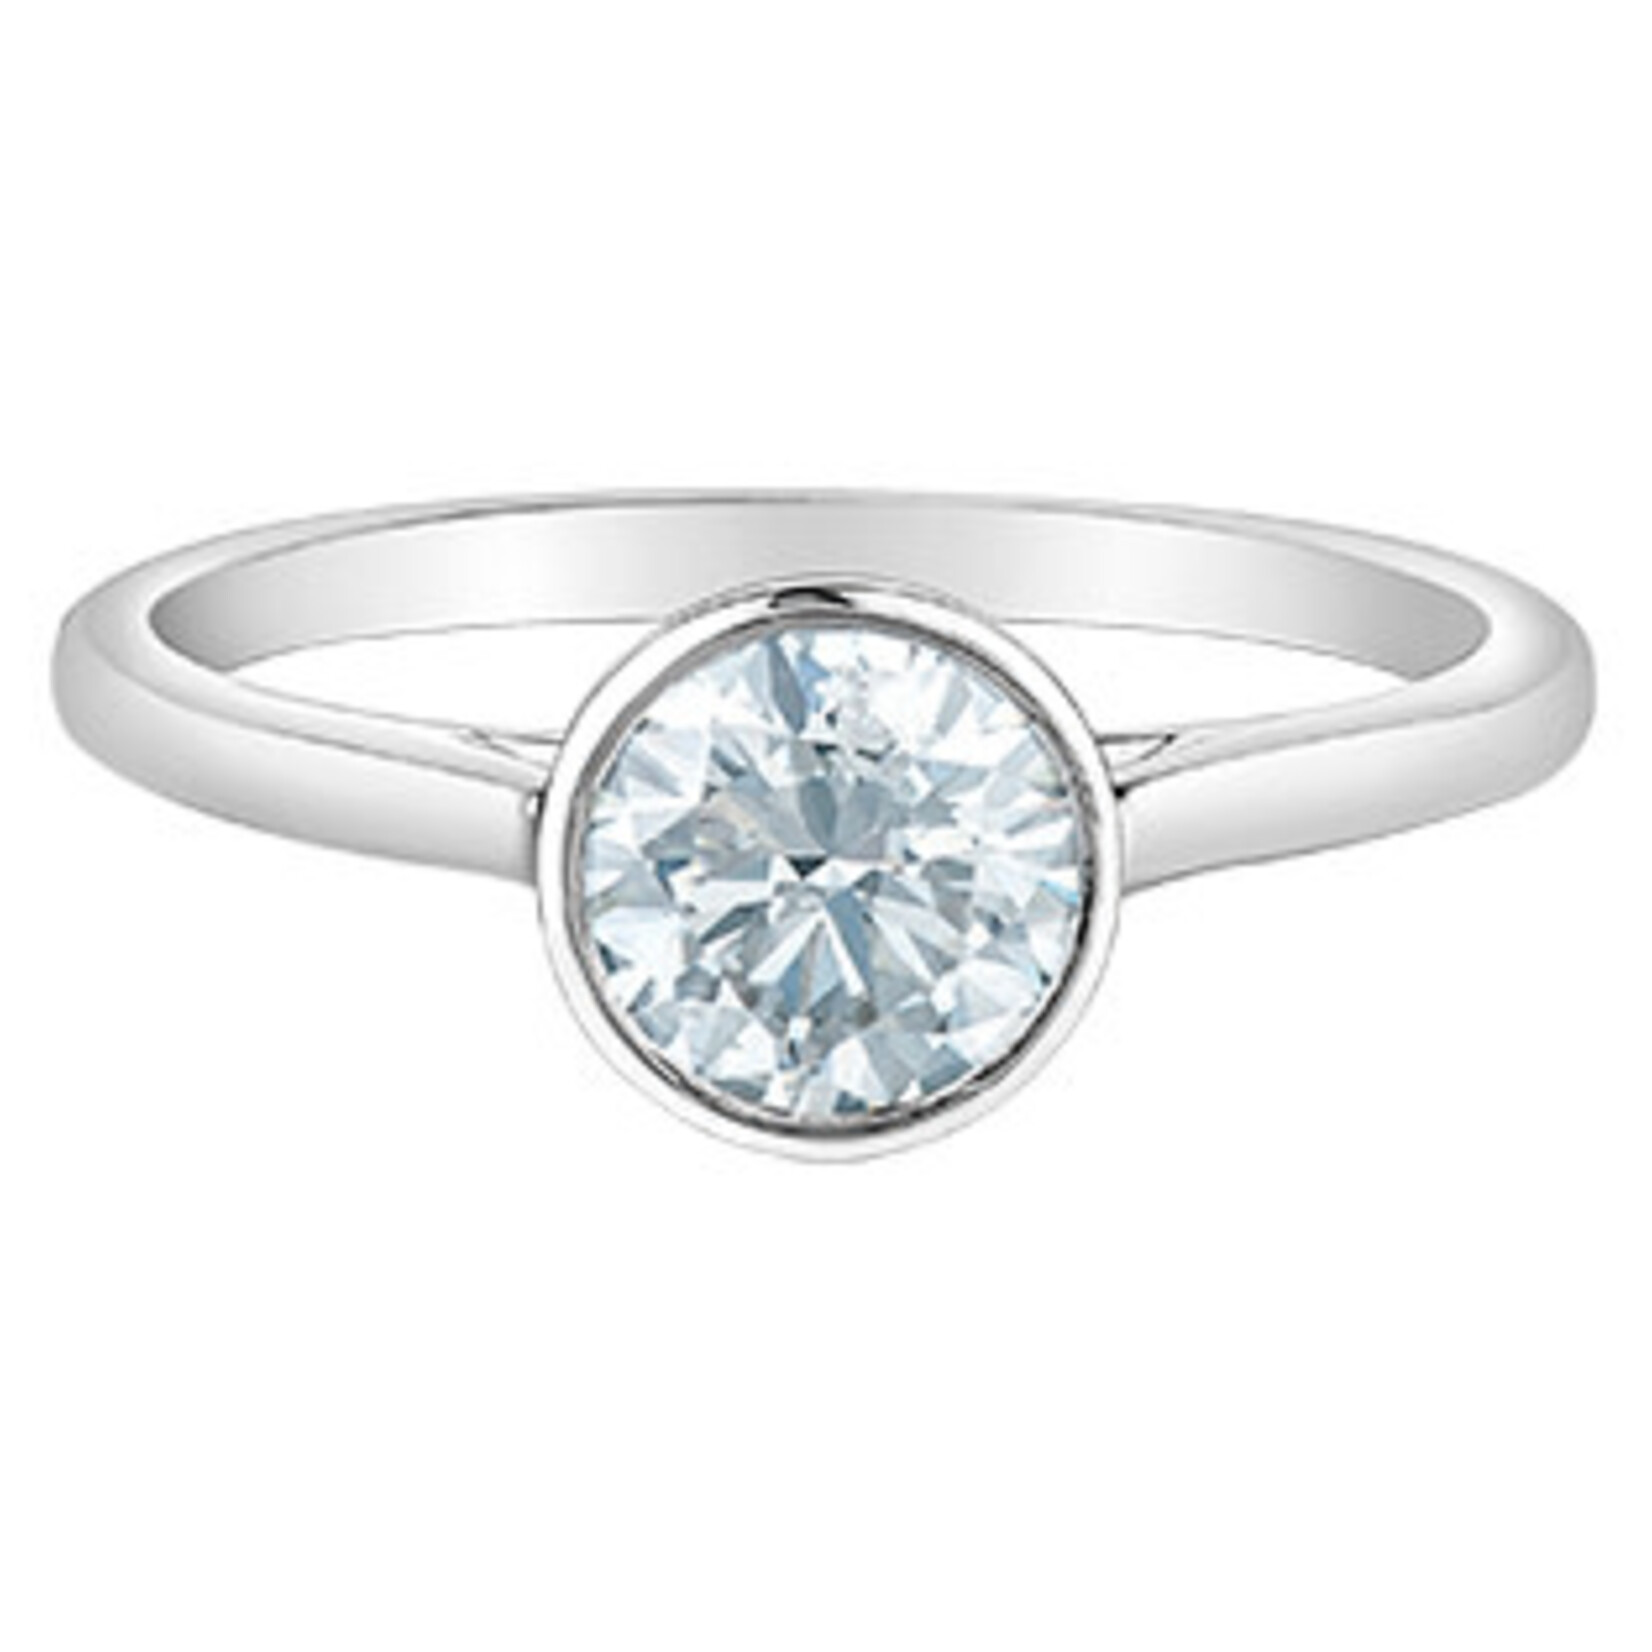 14K WG 1RD#LGD005296 Round 1.02CT Diamond Ring